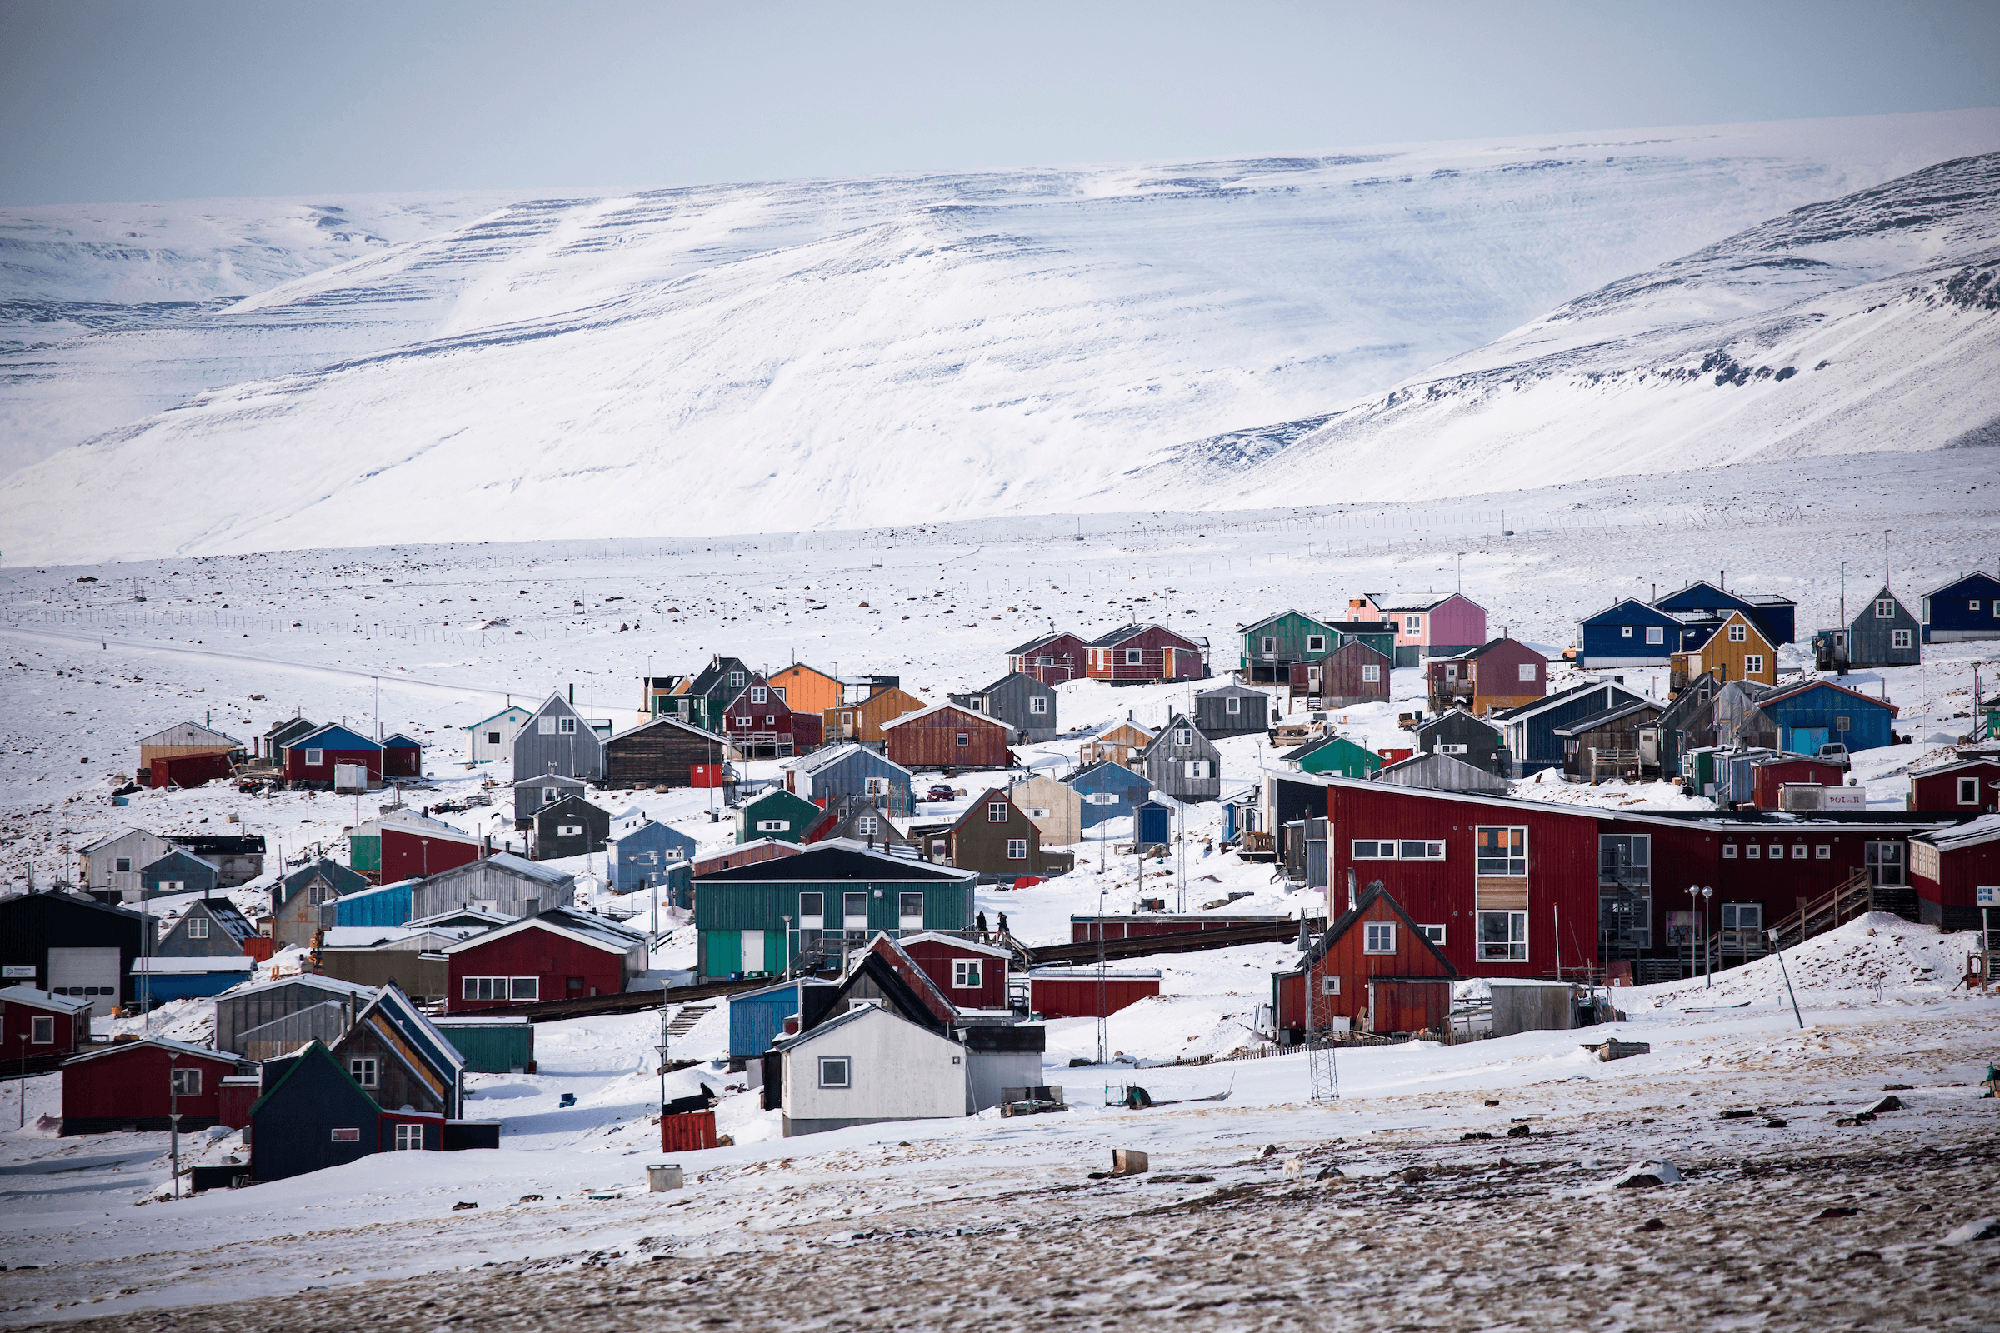 Cuộc sống tại thị trấn tận cùng cực bắc của Trái đất, nơi người dân xây nhà trên băng và sống trong bóng tối gần nửa năm - Ảnh 1.